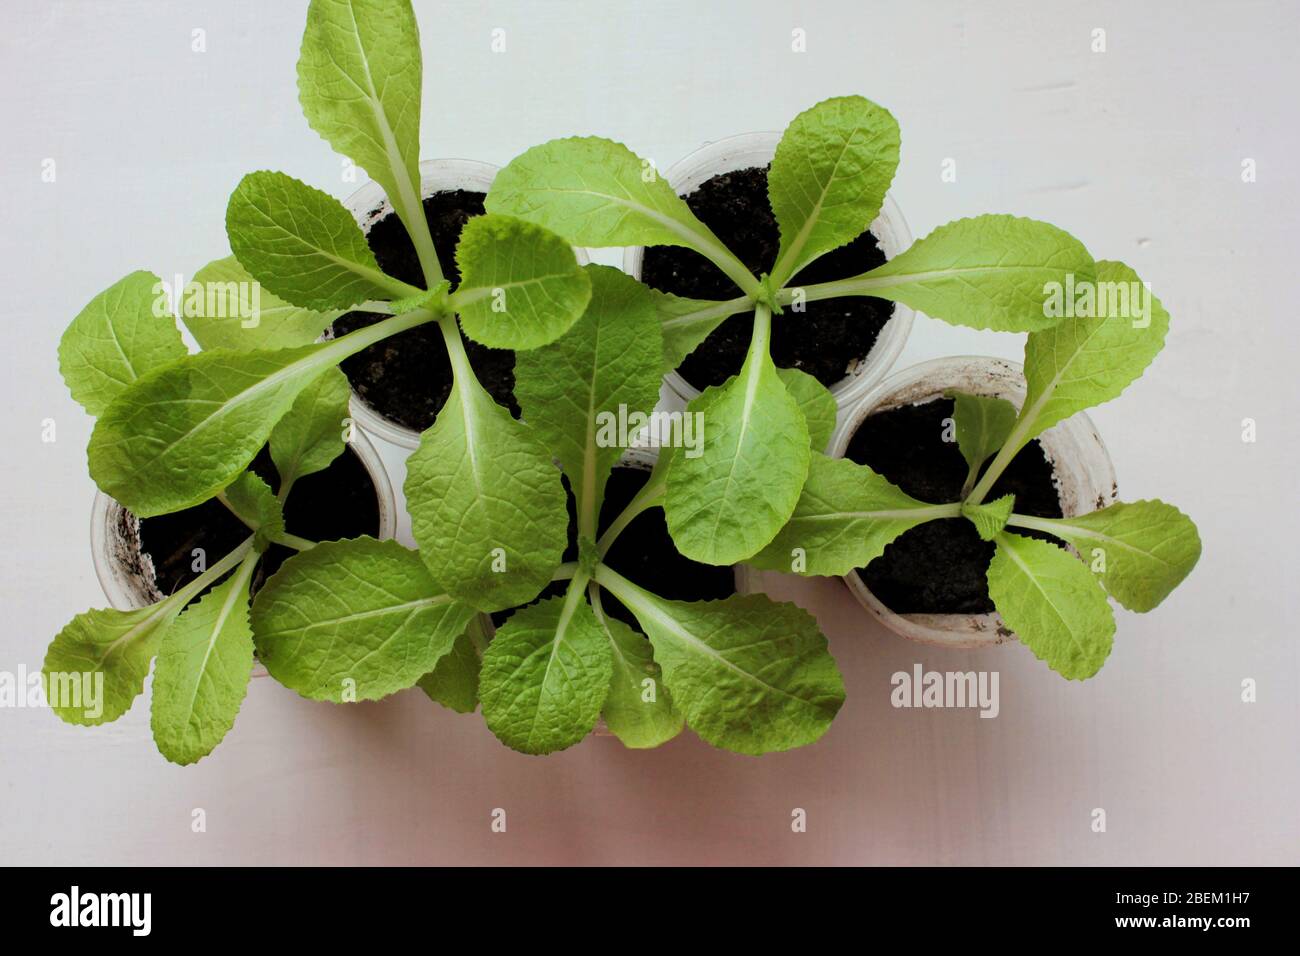 Chinesischer Napa Kohl-Sämling sprießt im Topf auf weißem Hintergrund. Orient Express Beijing Kohl wachsen aus Samen im Balkon Gemüsegarten. Stockfoto